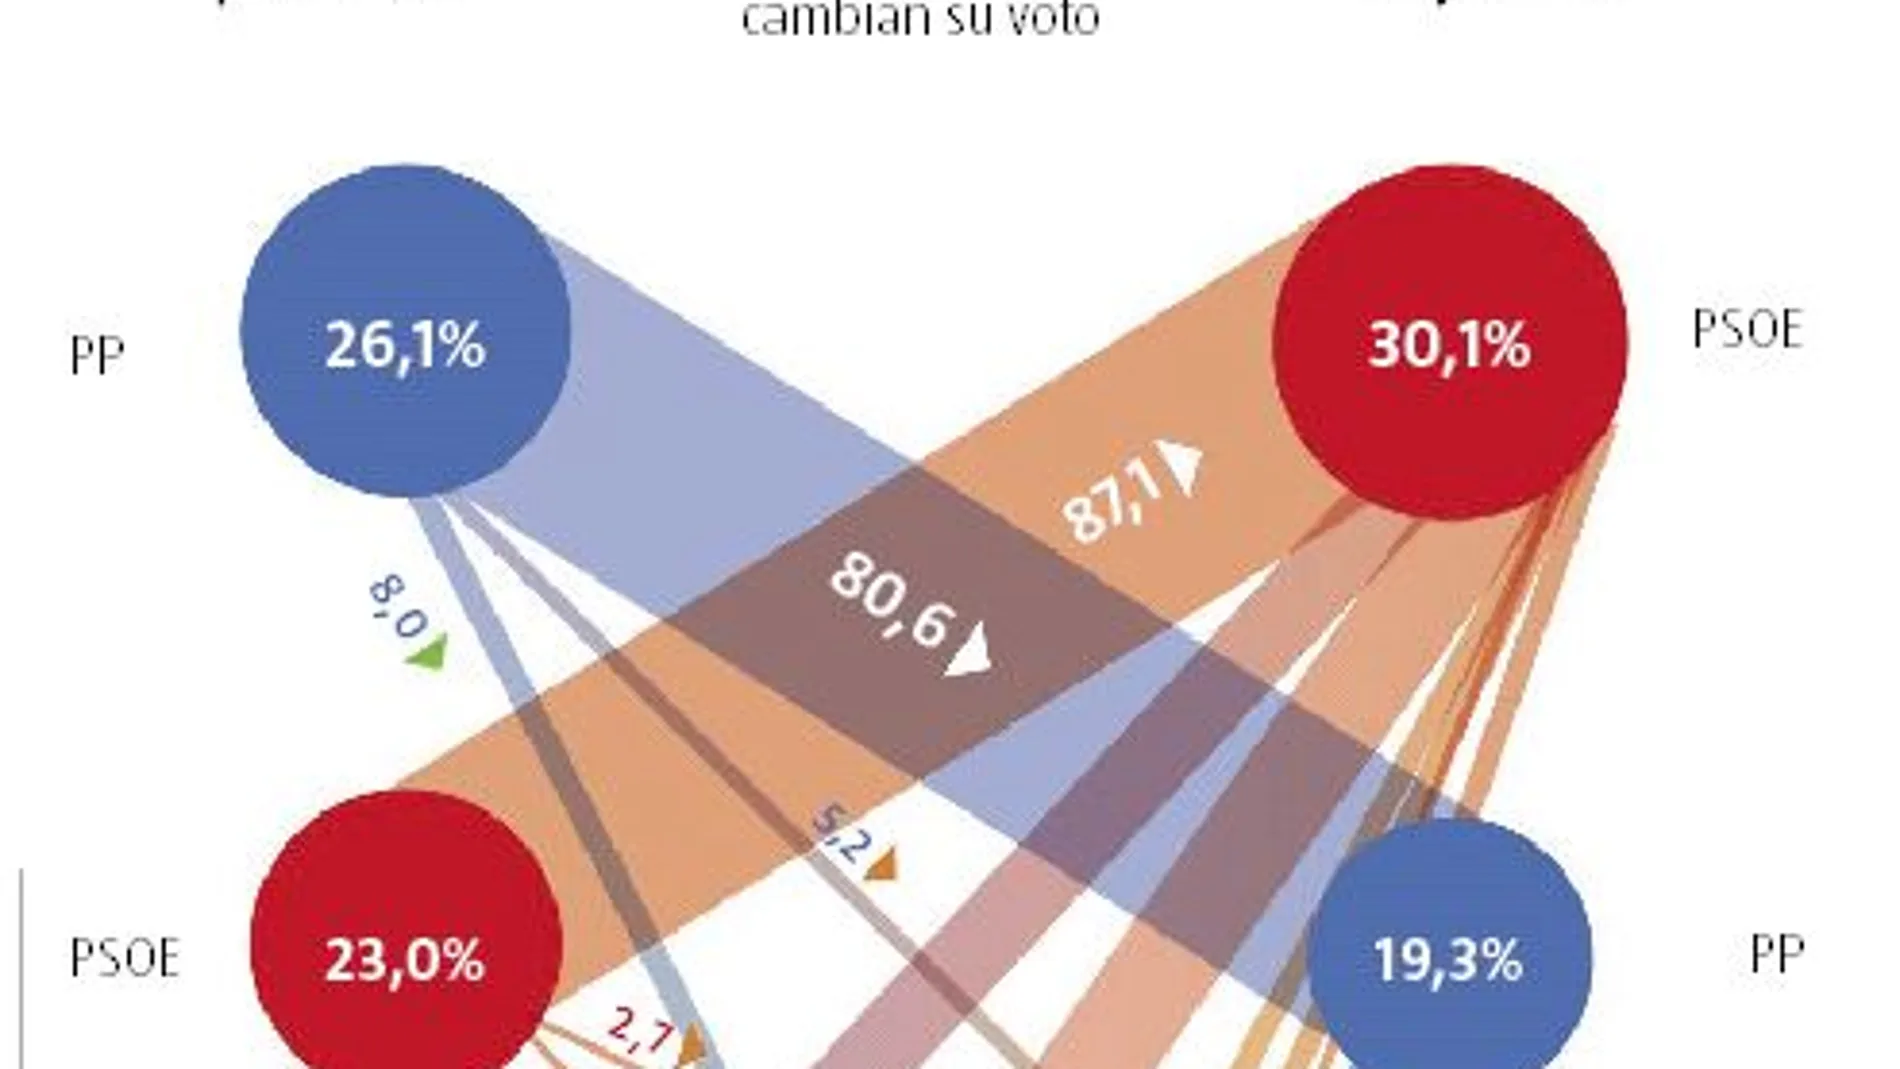 Análisis. PP y PSOE conservan hasta el 80% del voto